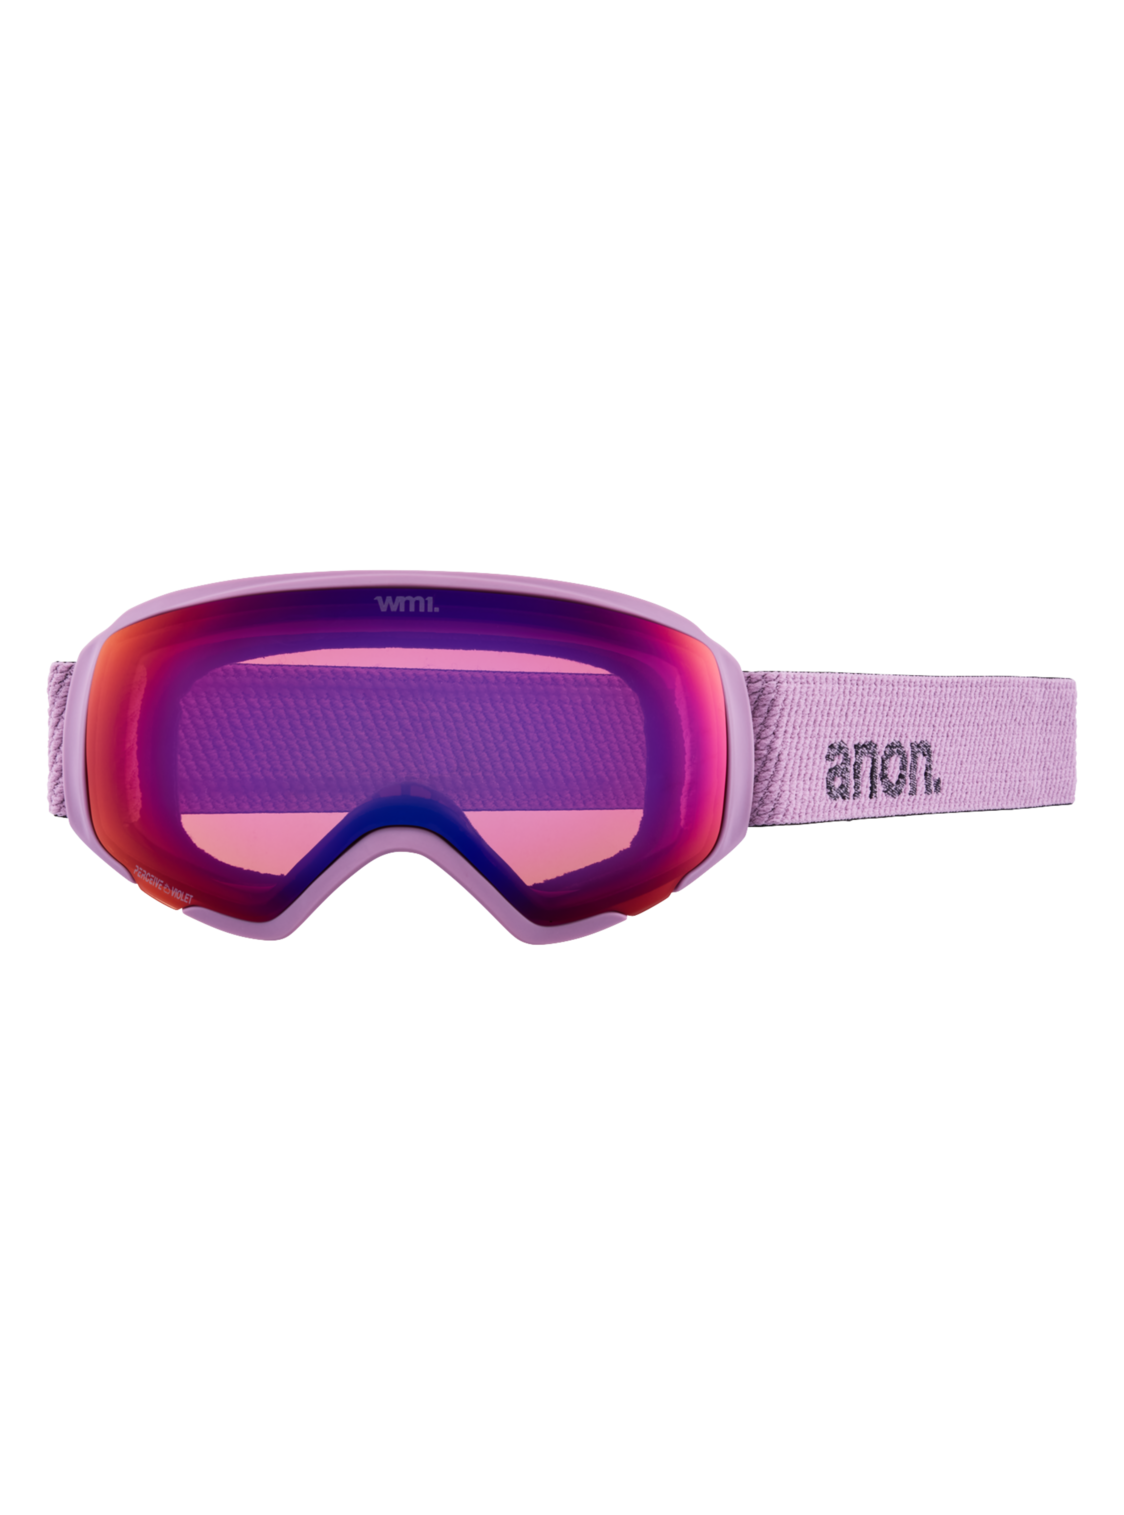 Anon WM1 Brille purple / perceive variable violet (mit Zusatzbrillenglas und MFI mask)